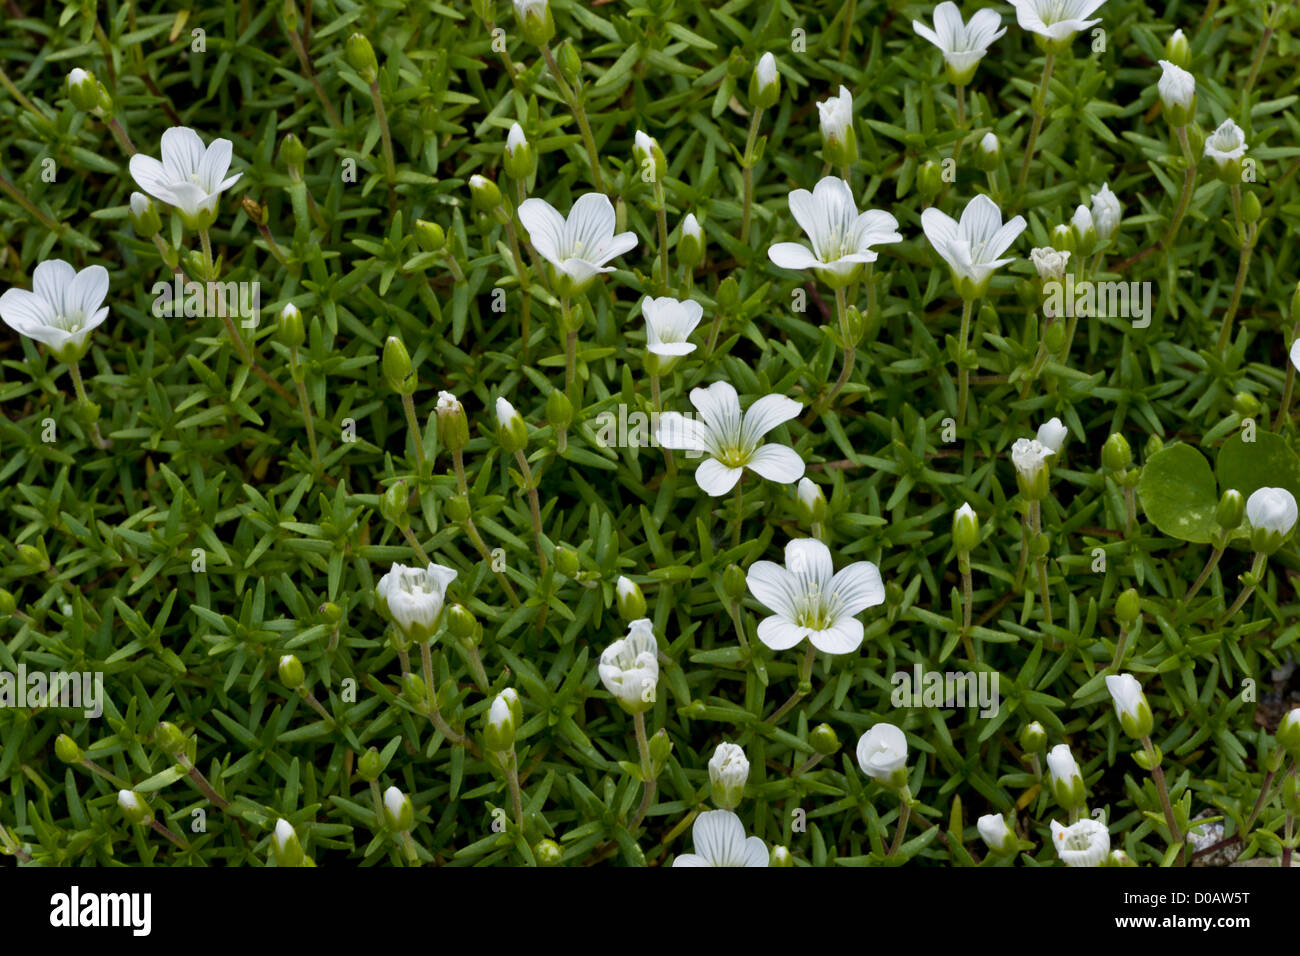 Sandworts (Minuartia biebersteinii) in flower, close-up Stock Photo